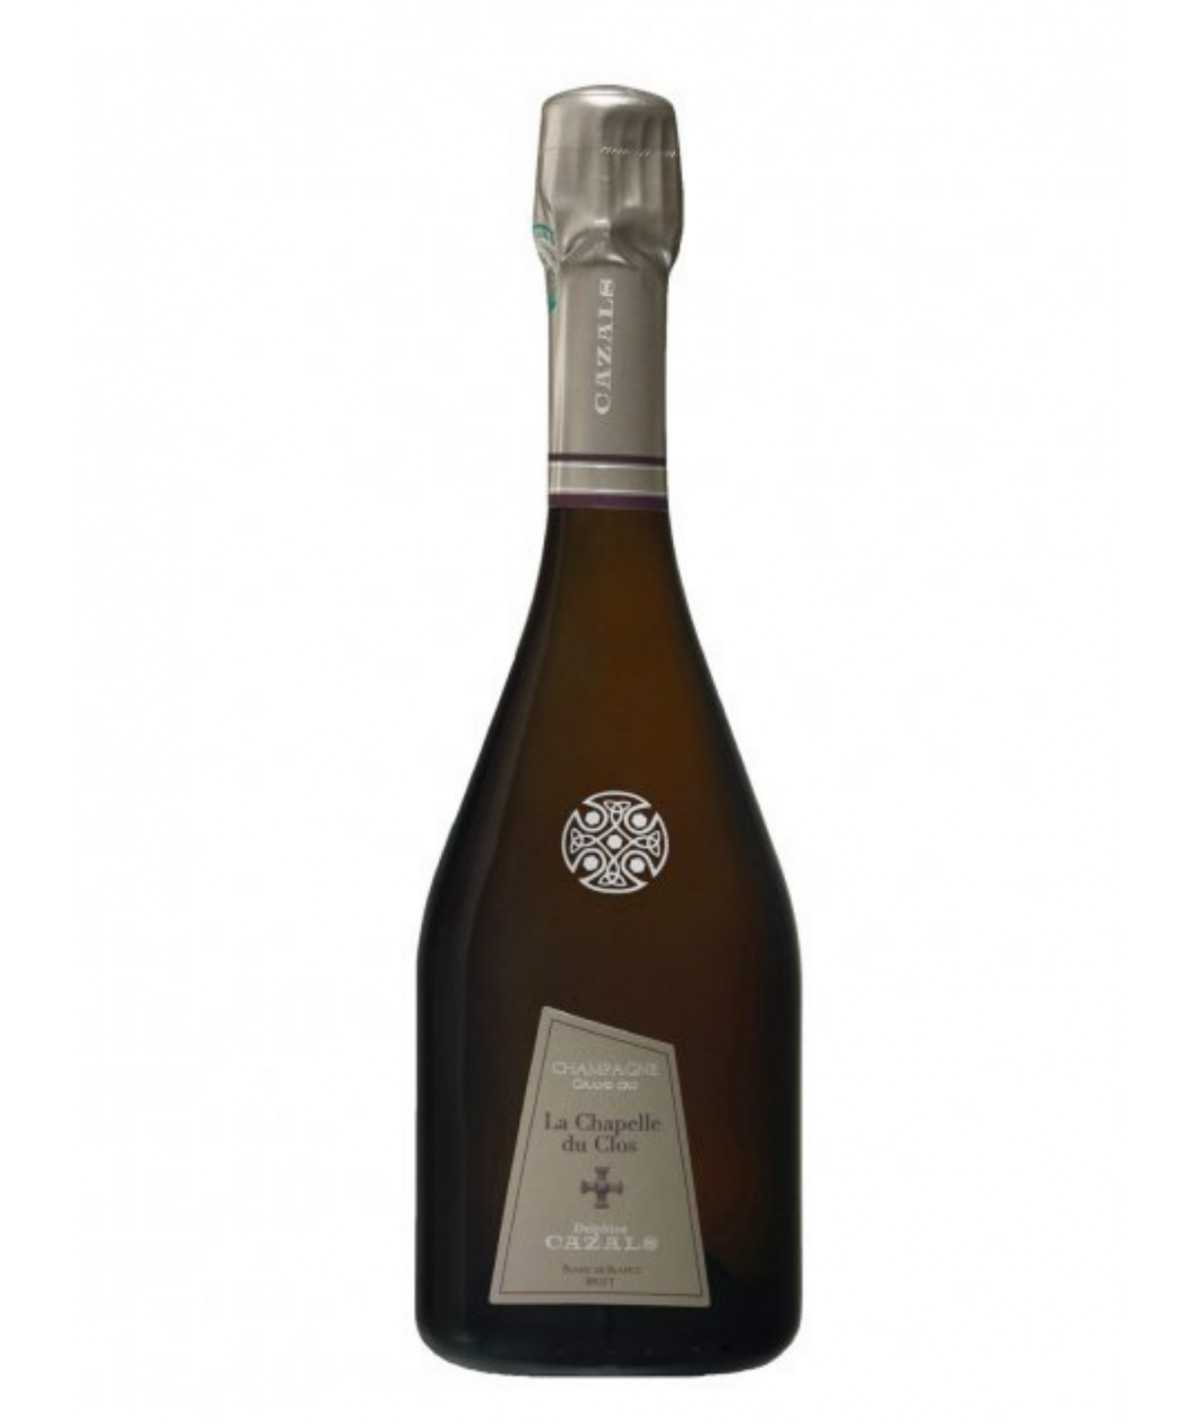 Le Clos Cazals - La Chapelle du Clos 2014 vintage champagne